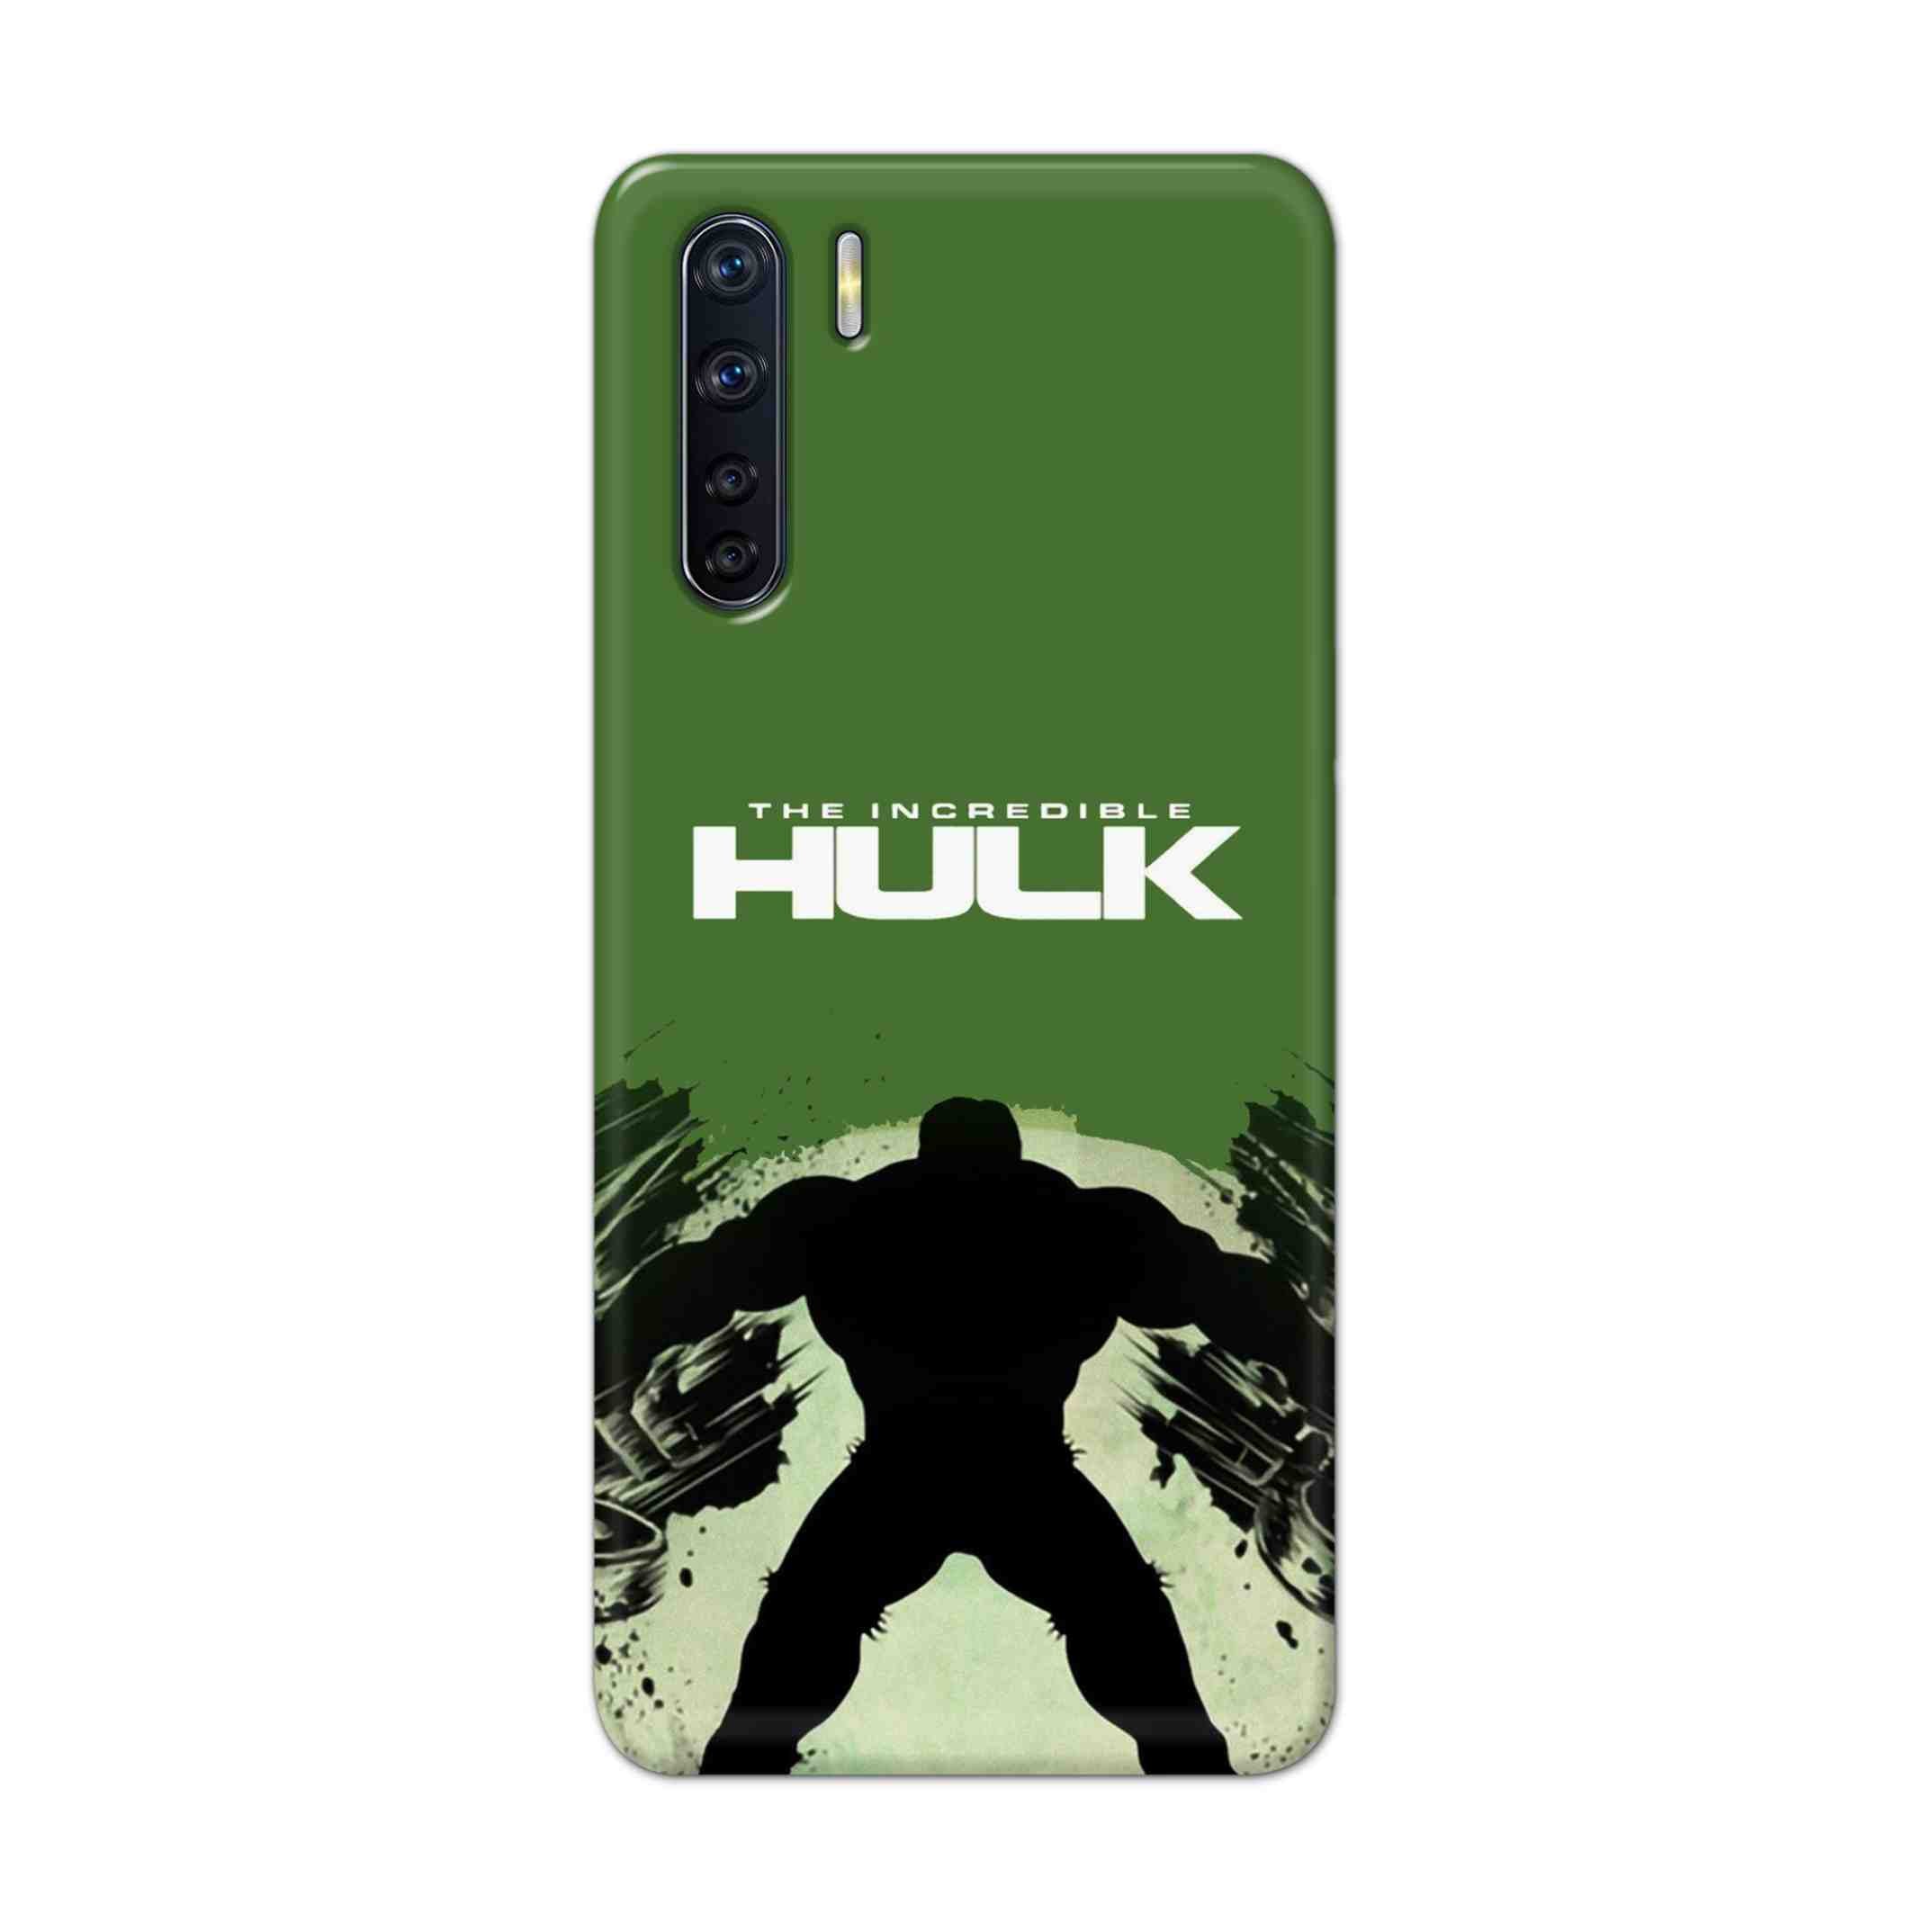 Buy Hulk Hard Back Mobile Phone Case Cover For OPPO F15 Online